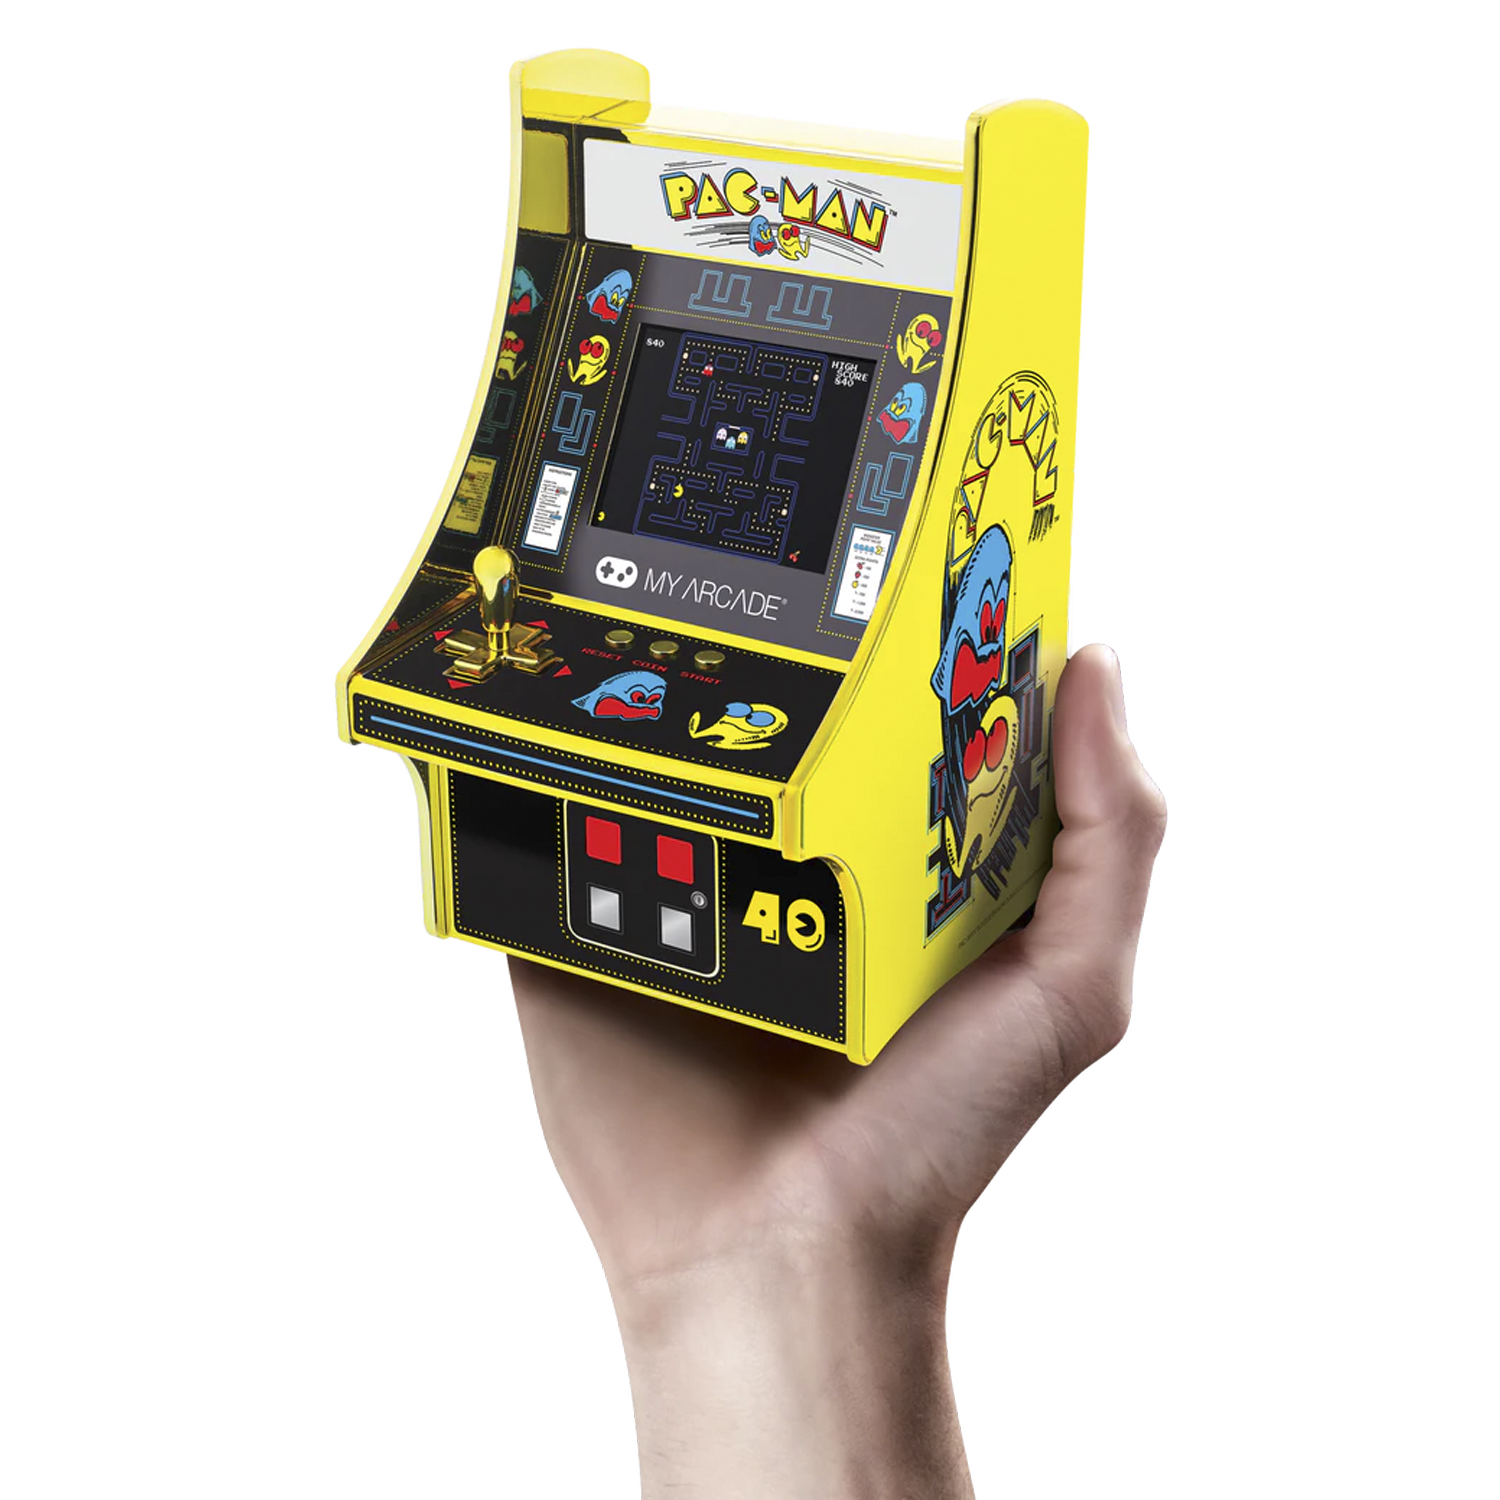 Pac-Man completa 40 anos e ganha homenagens da NVIDIA e Twitch • B9